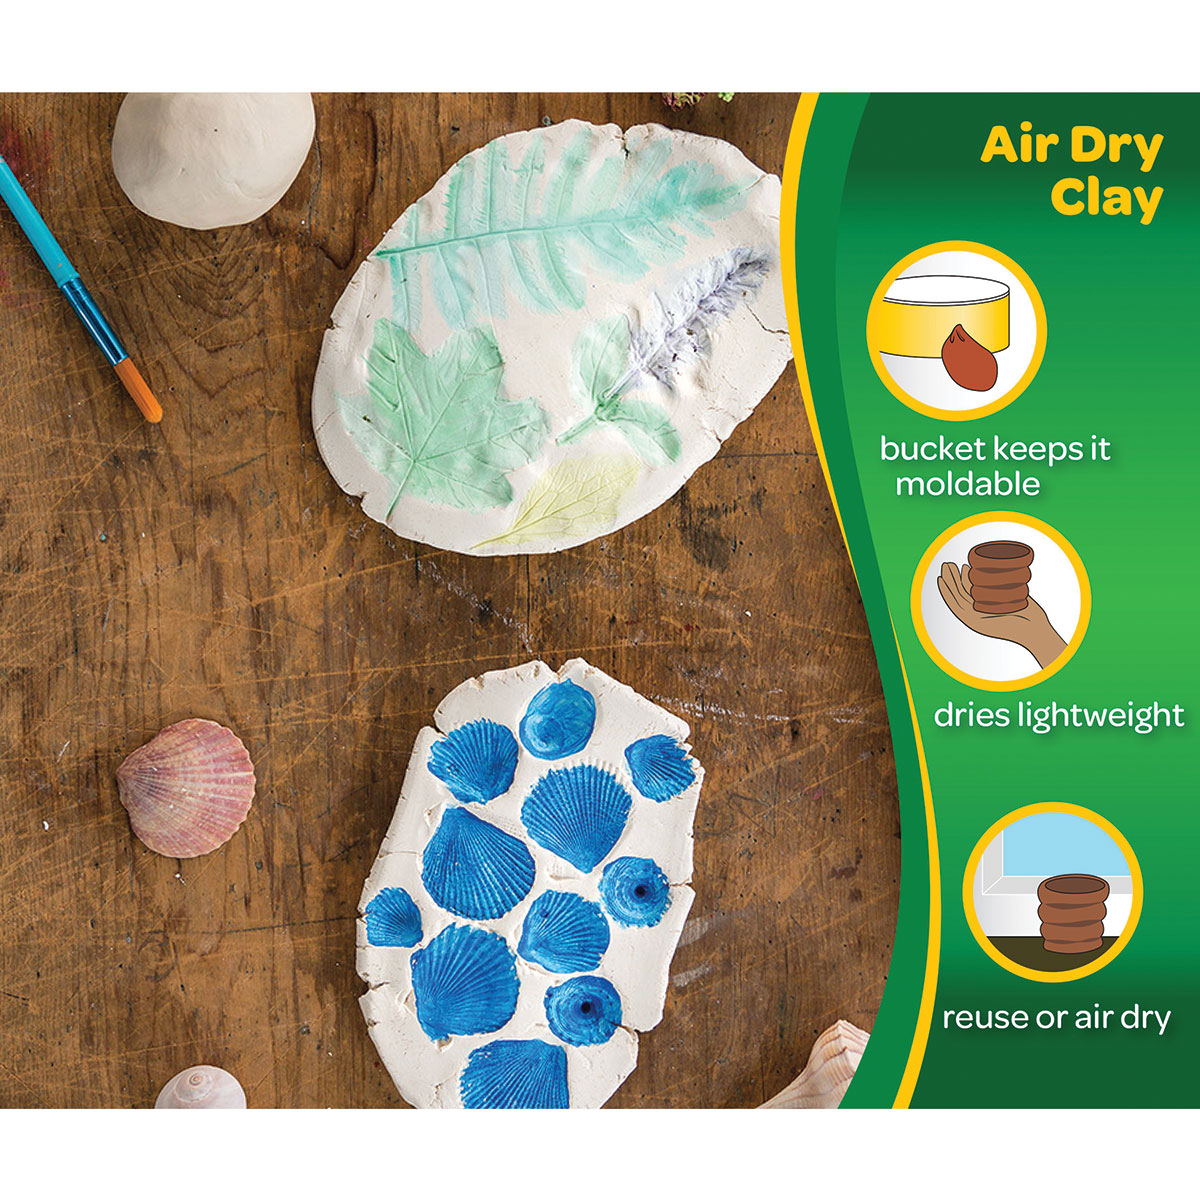 Crayola Air Dry Clay White (2.5 lb) Delivery - DoorDash